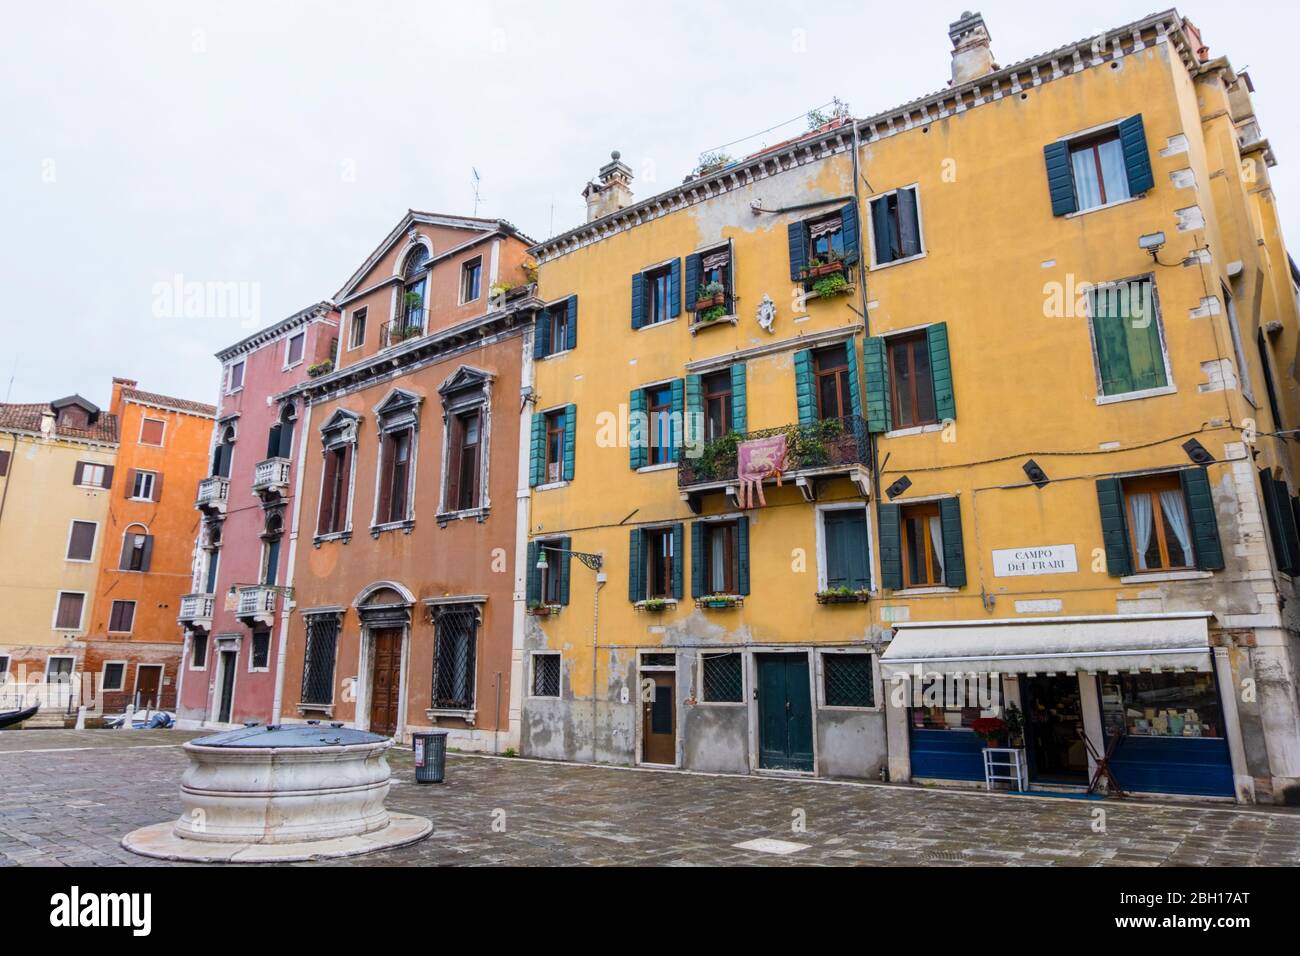 Campo dei Frari, San Polo district, Venice, Italy Stock Photo